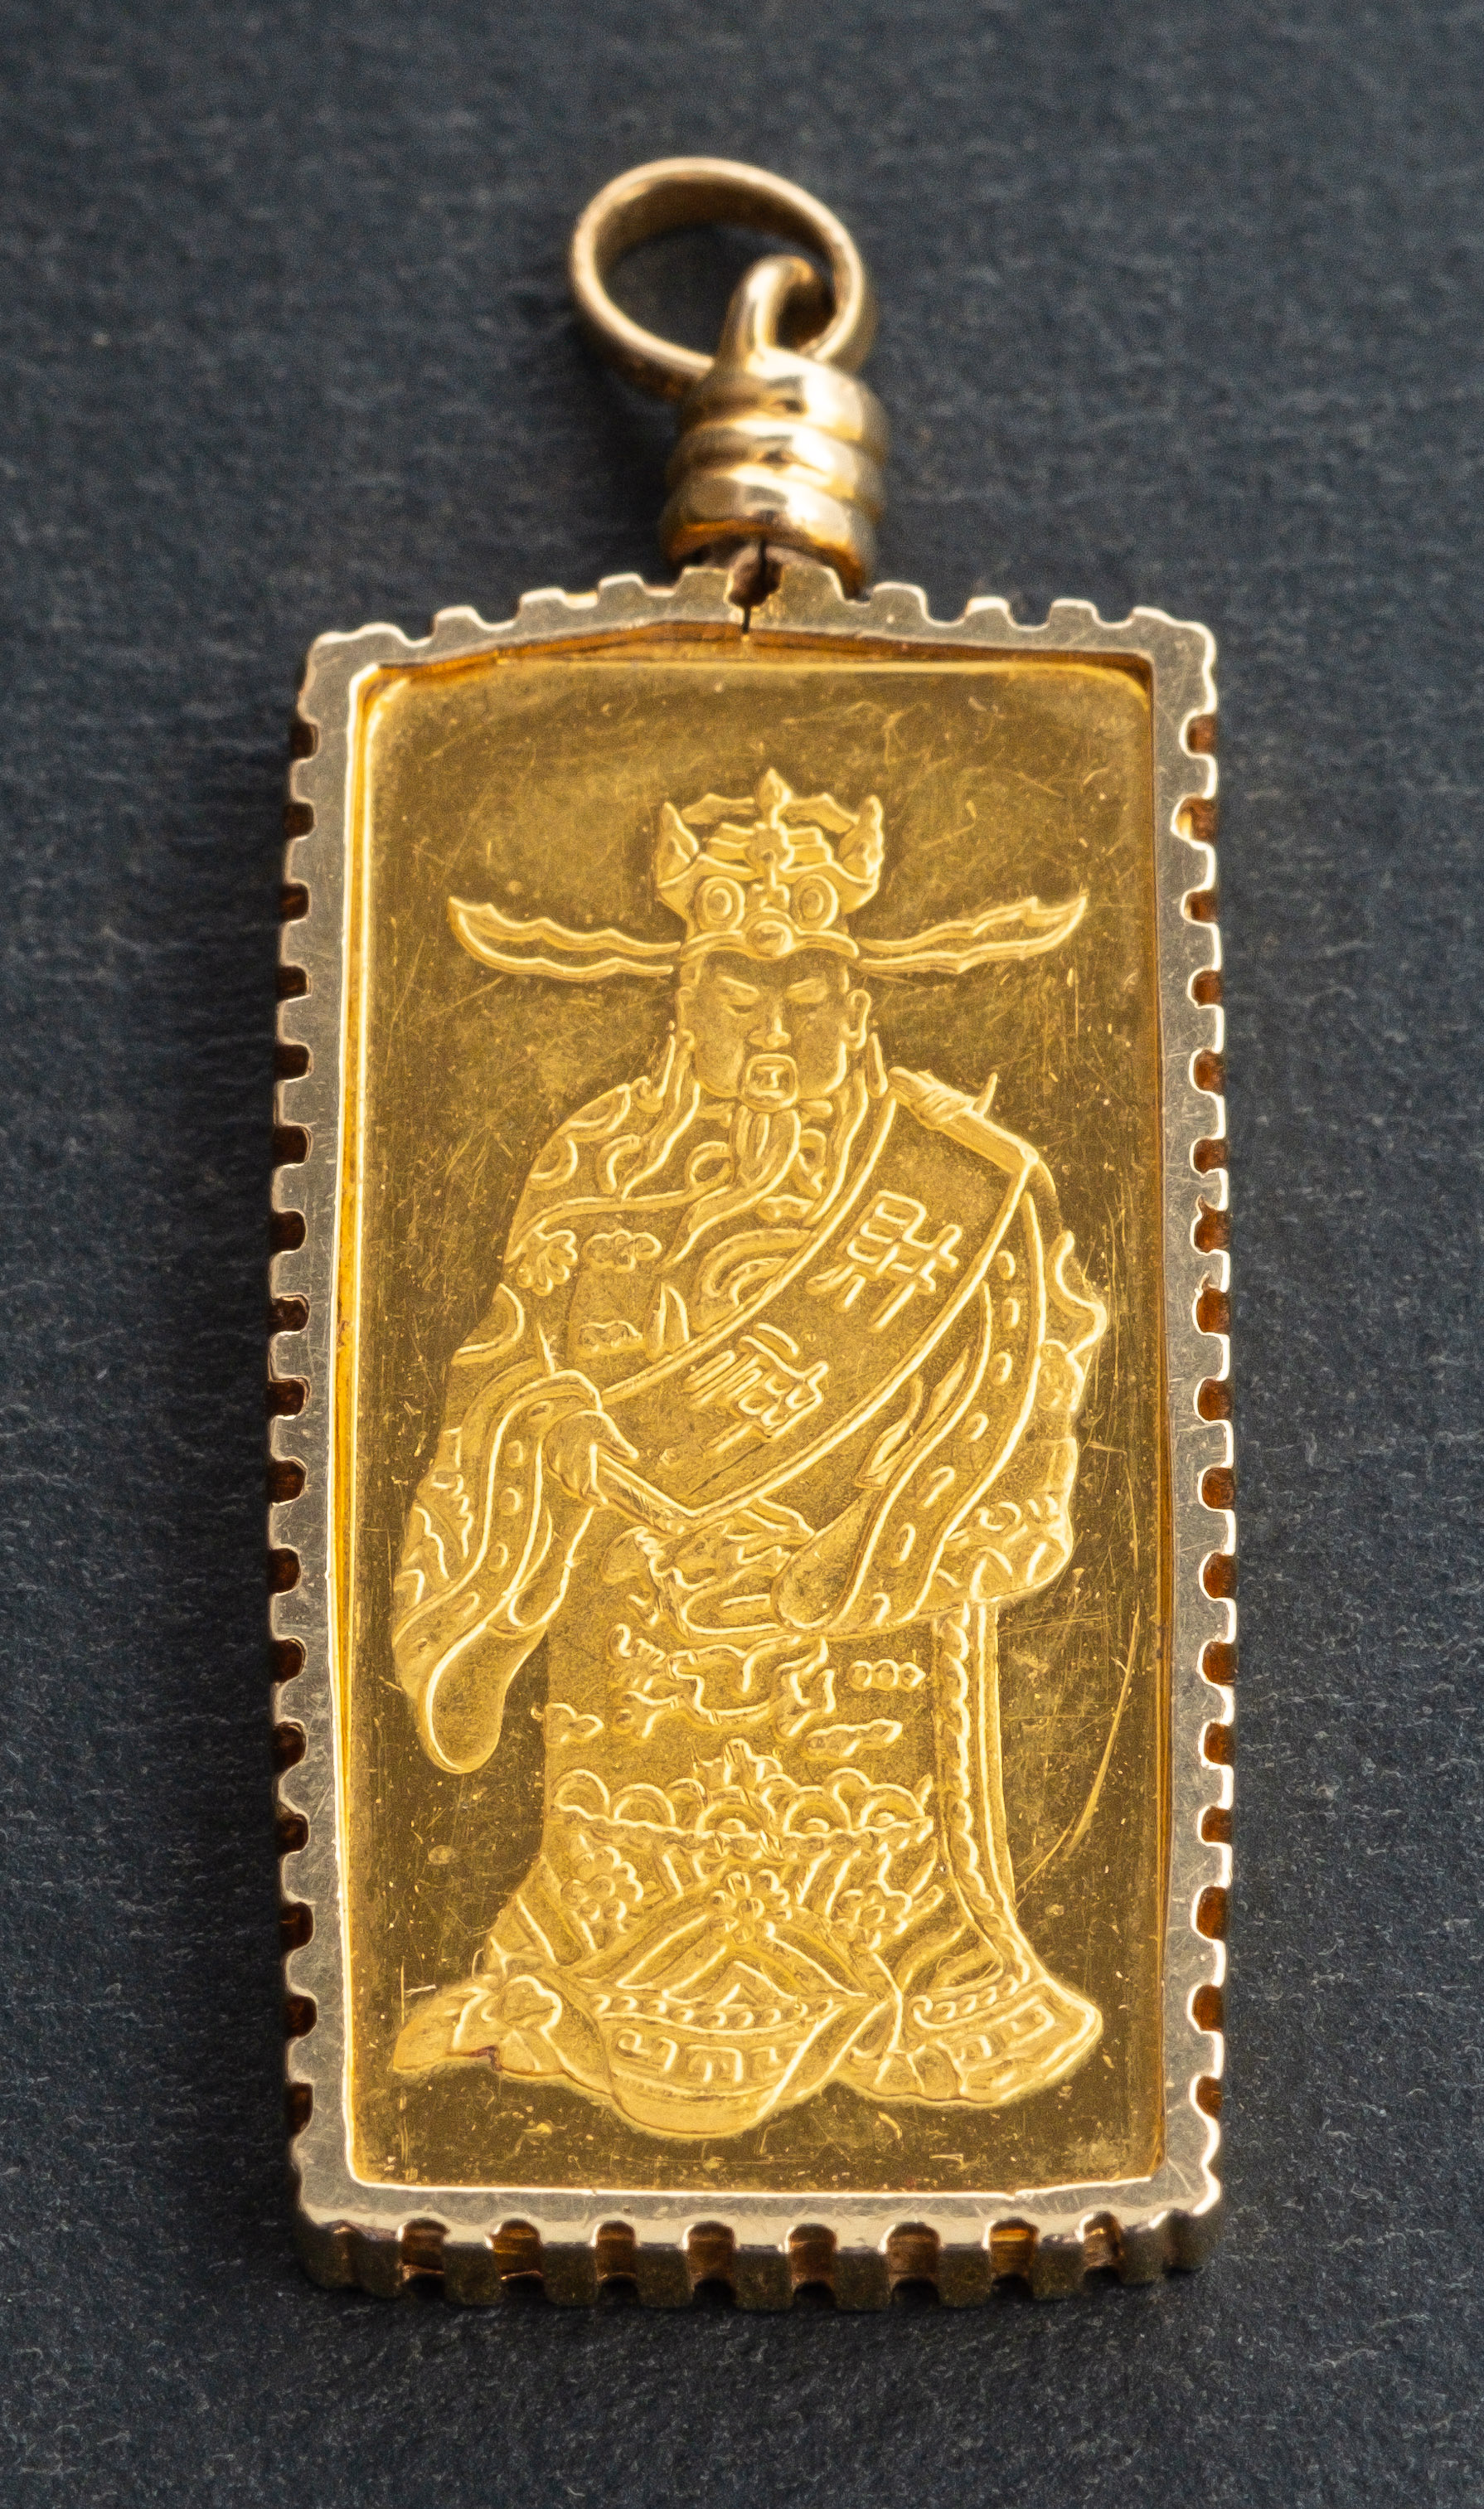 A 24ct gold ingot, marked 7.